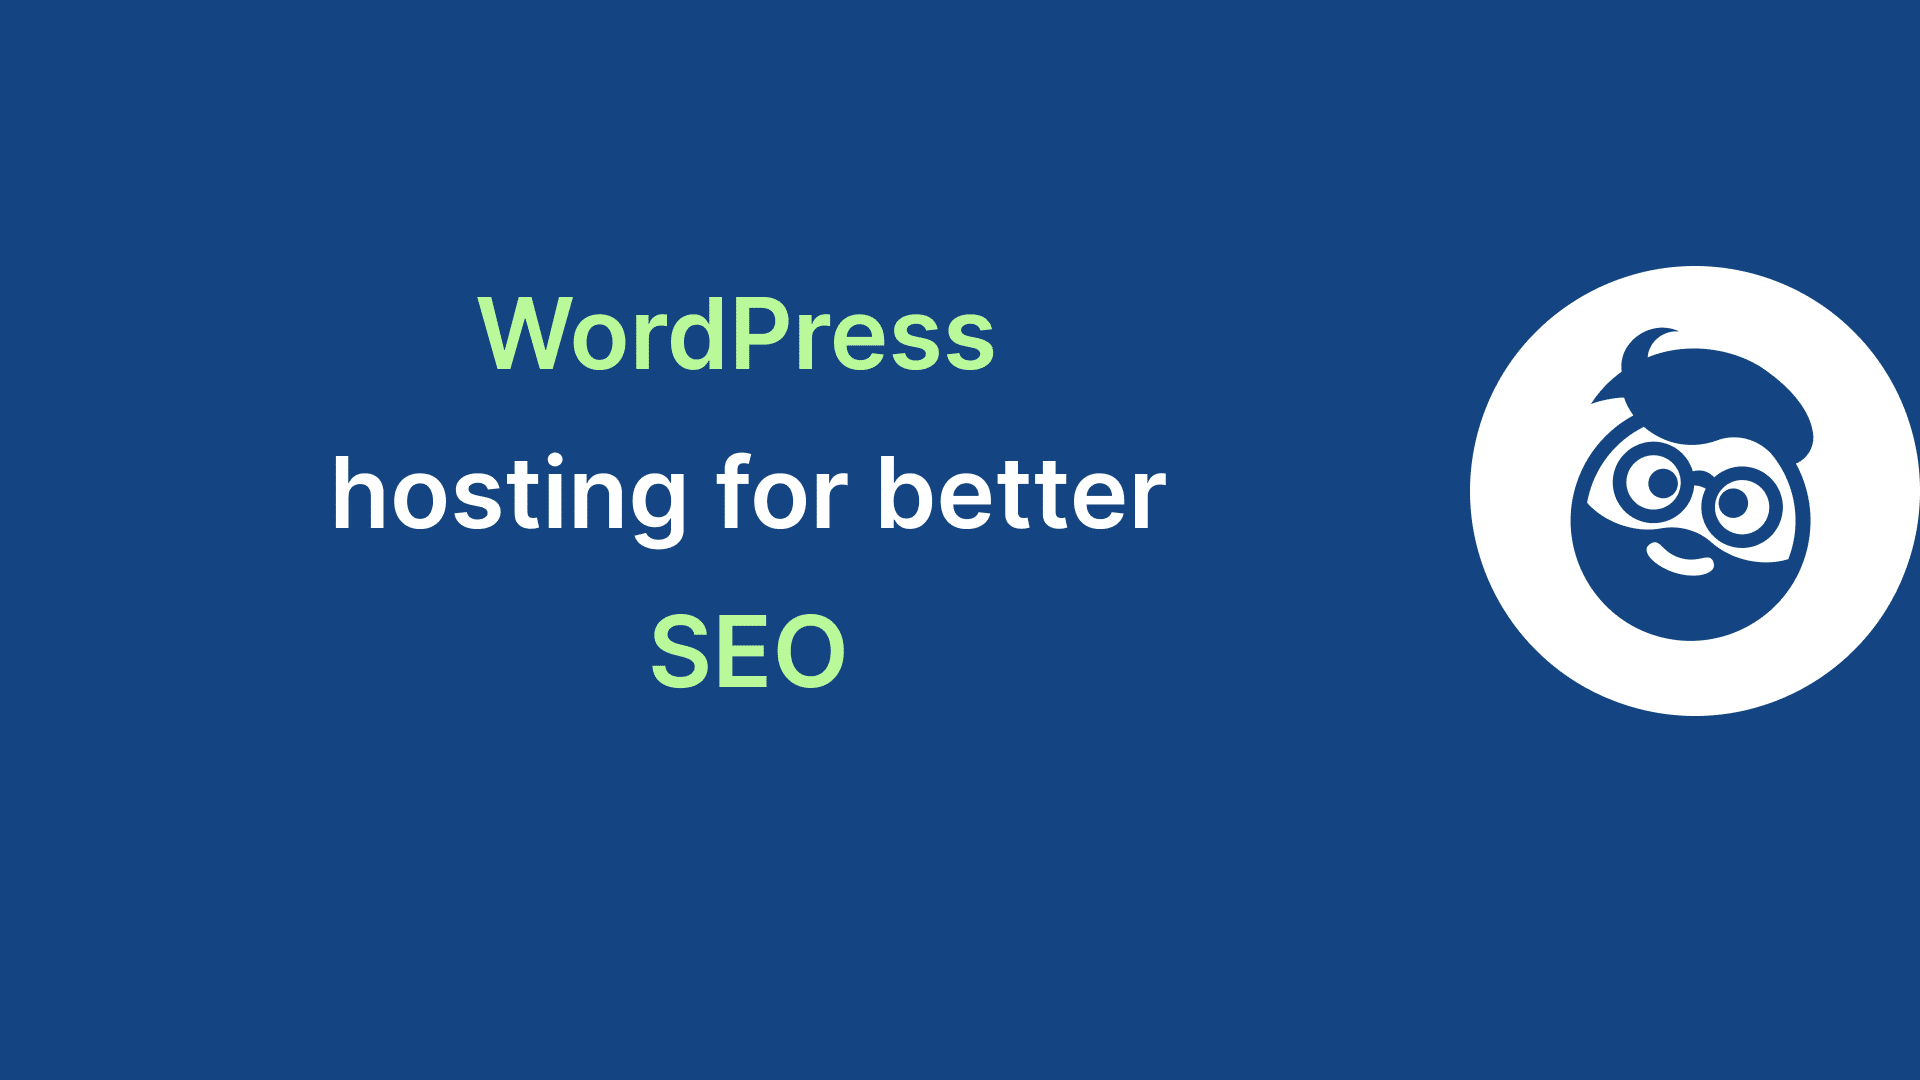 wordpress hosting better seo